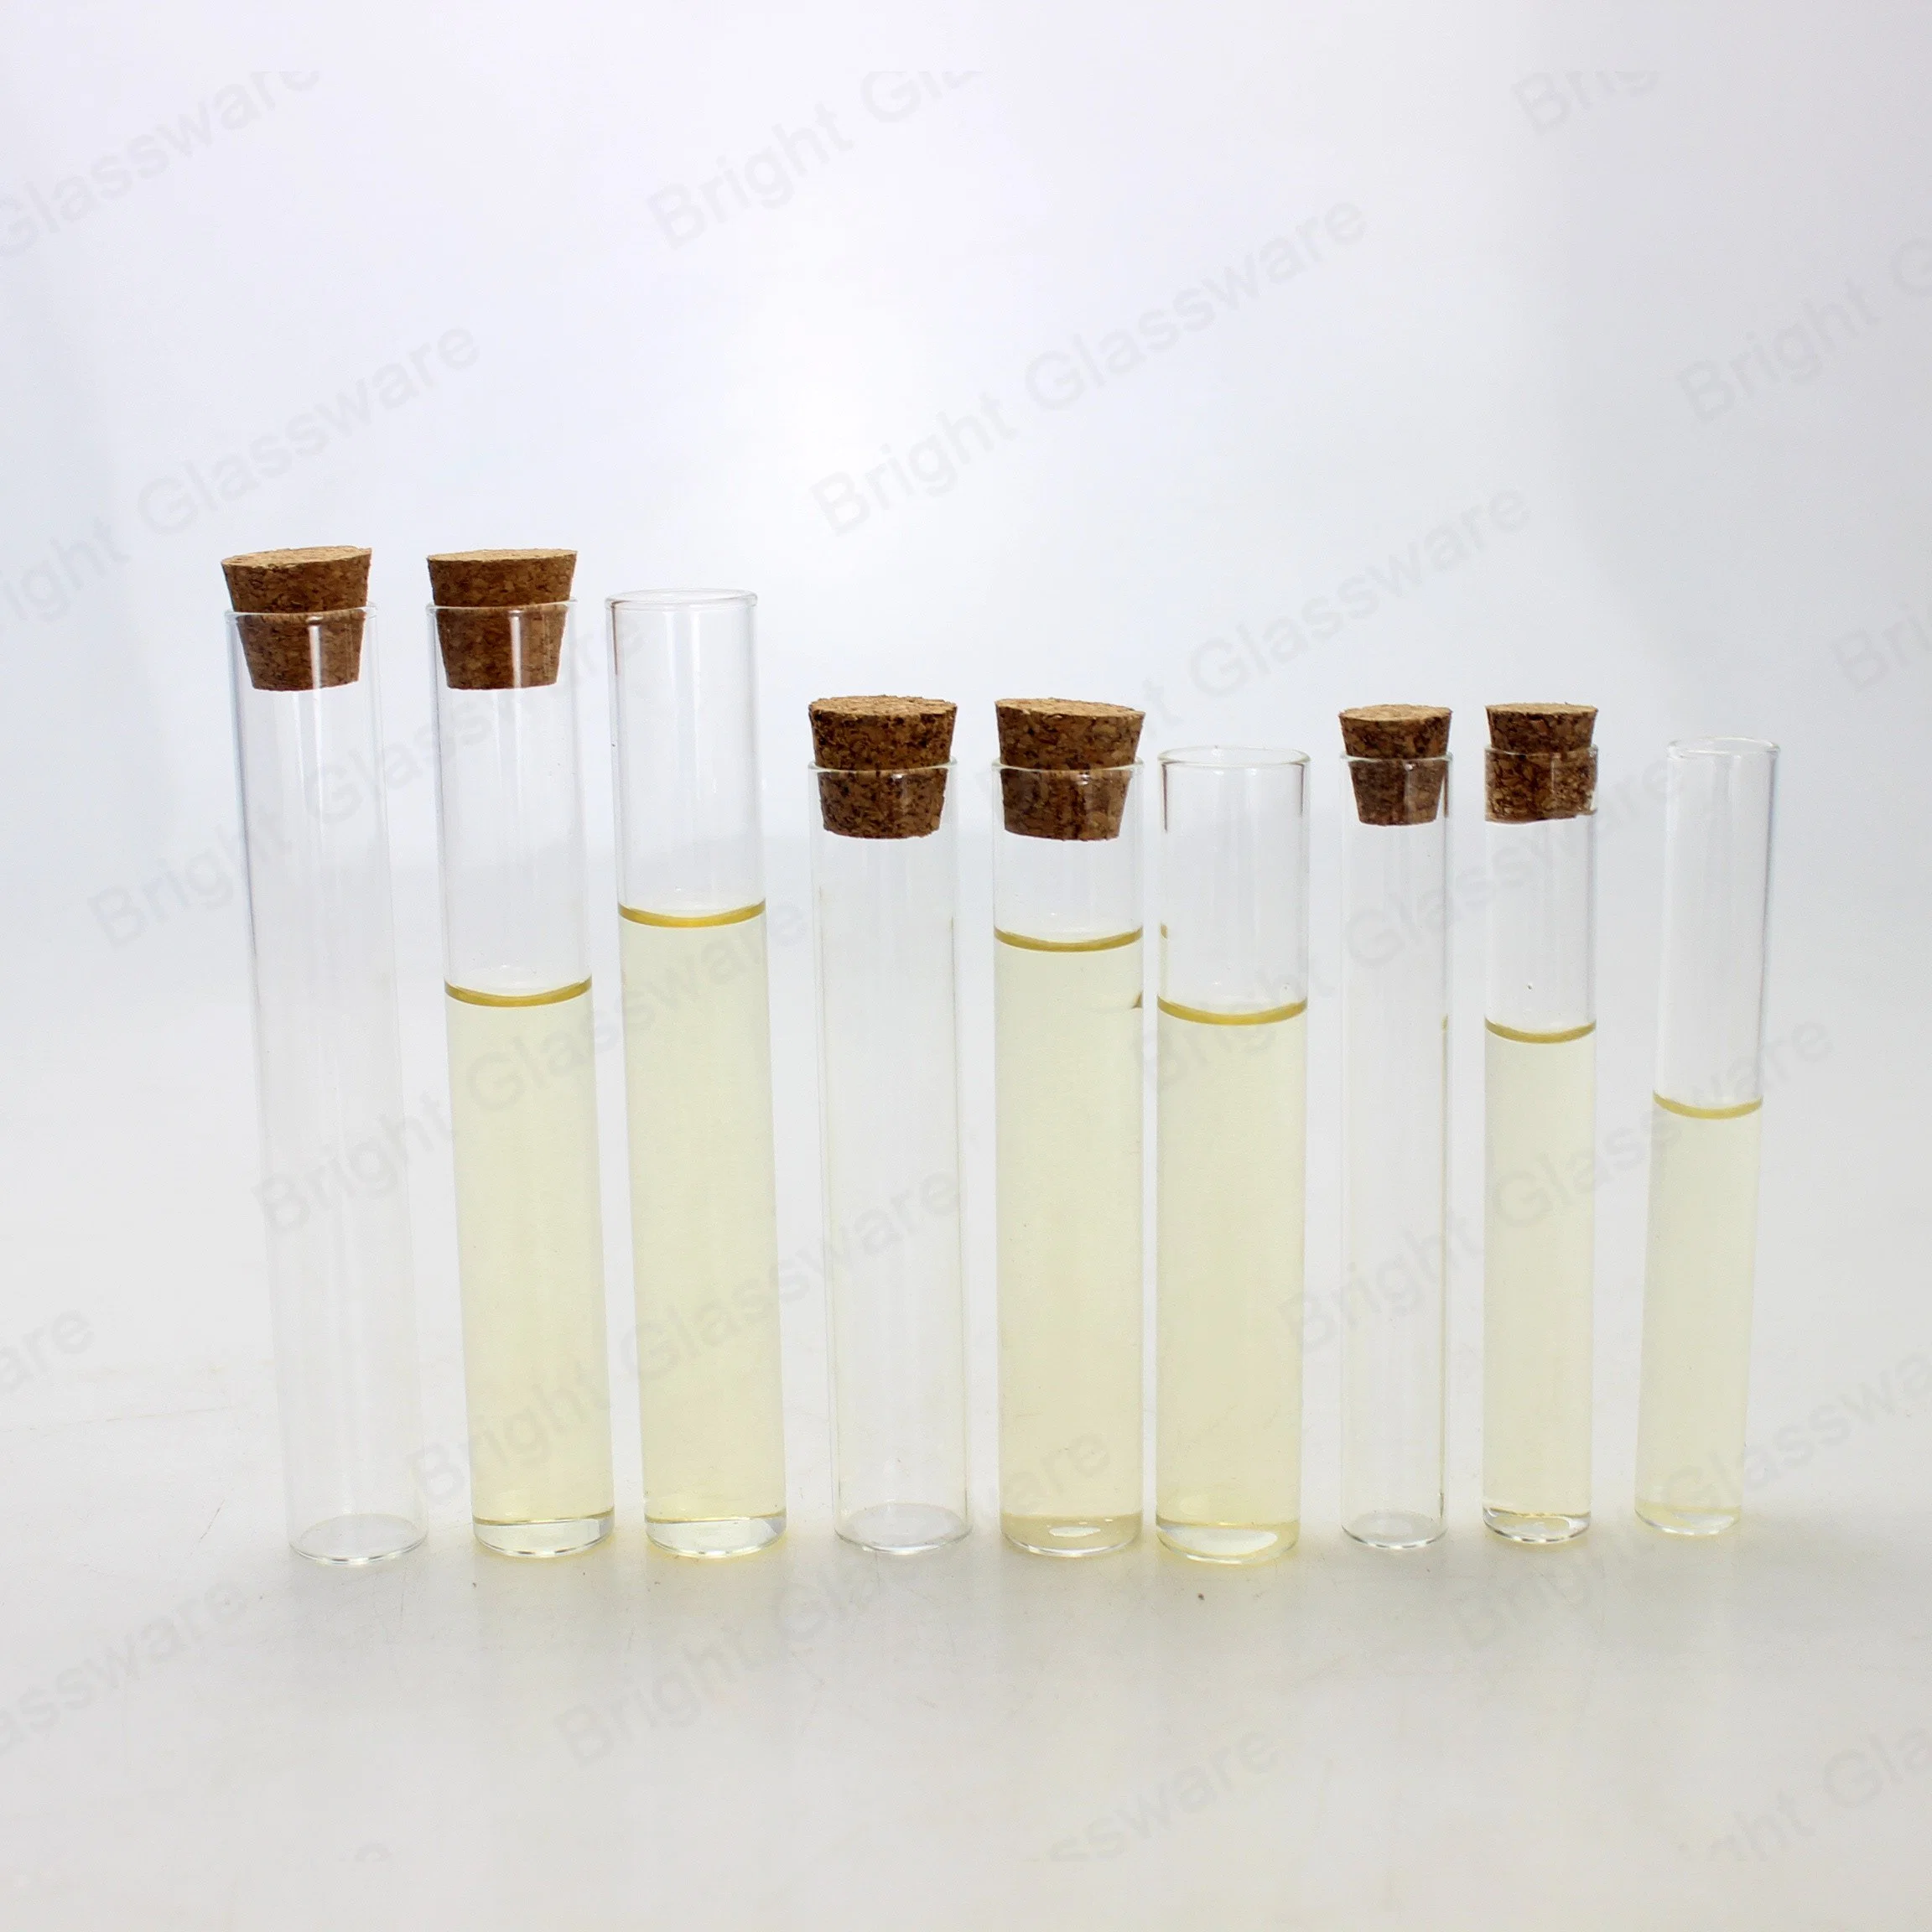 Laboratorio de gran calidad de prueba de fondo redondo, plano o el tubo de vidrio con tapón de corcho